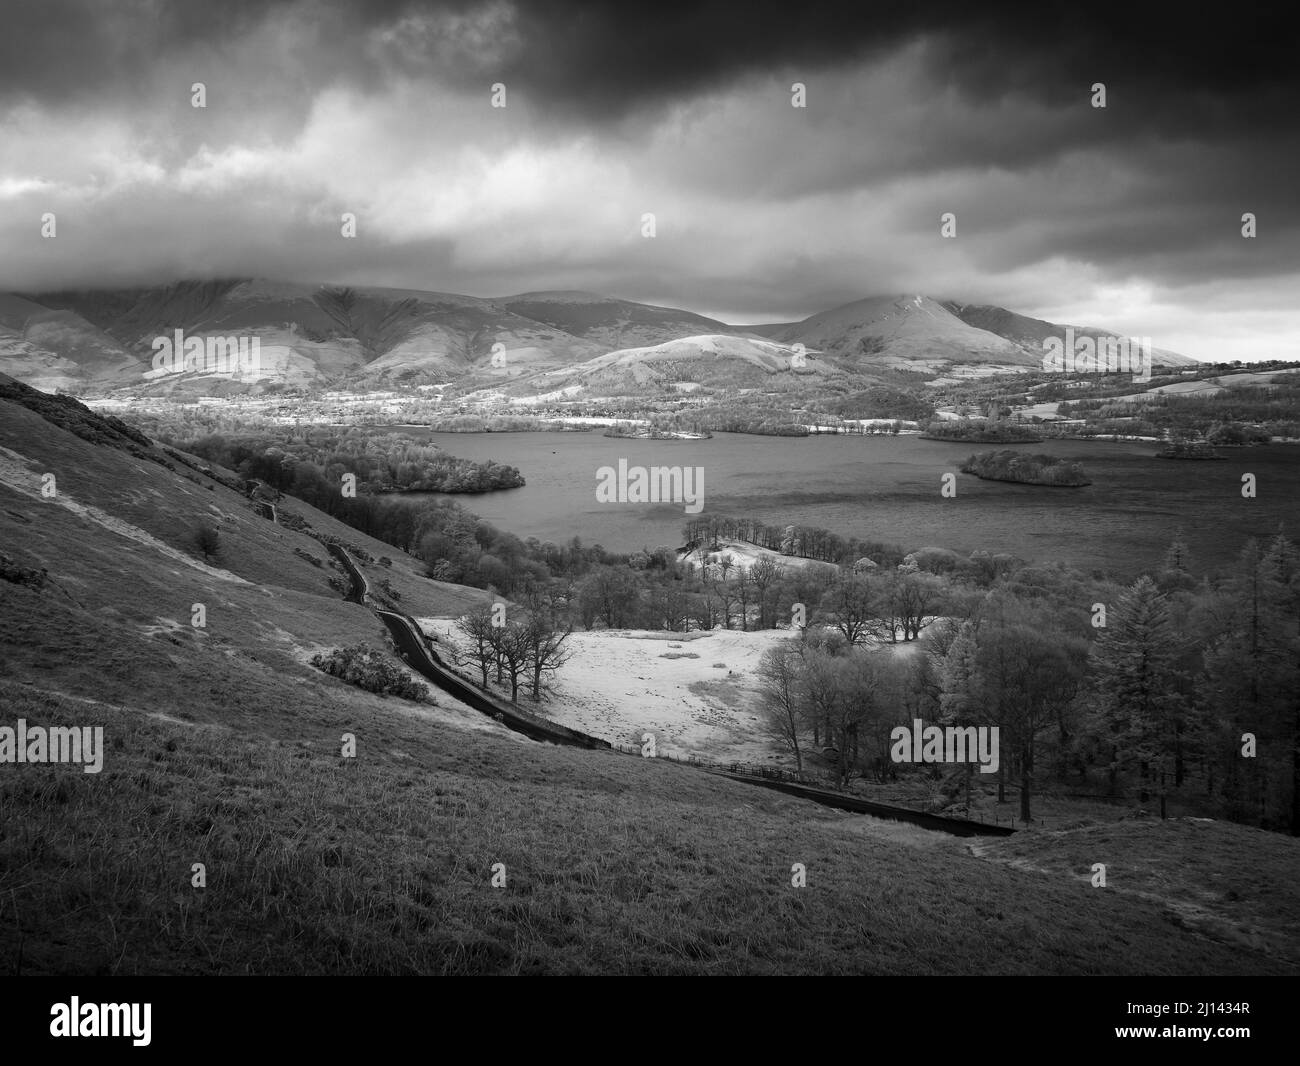 Eine schwarz-weiße Infrarotaufnahme des Derwent-Wassers vom Osthang der Cat Bells im Lake District National Park mit Skiddaw- und Blencathra-Fjälls im Hintergrund, Cumbria, England. Stockfoto